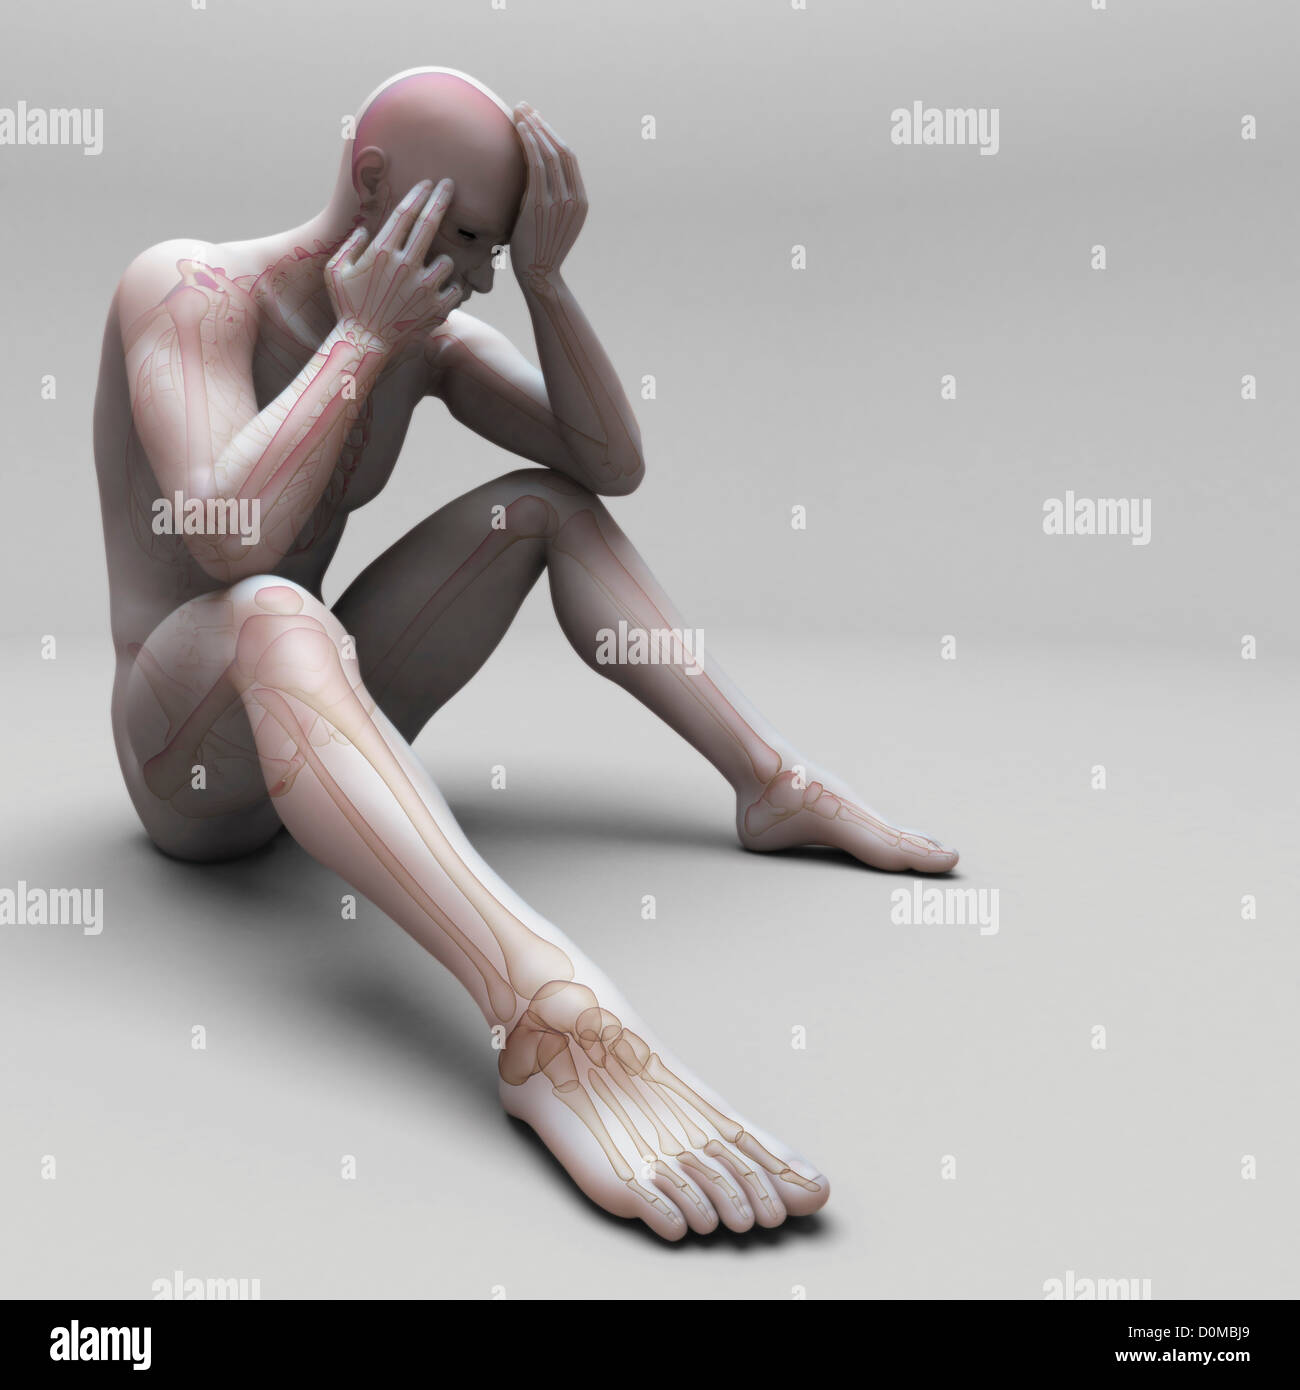 Anatomisches Modell zeigt die skelettartige Ausrichtung des menschlichen gebogen über und sitzen in Position vermitteln einen depressiven Zustand. Stockfoto